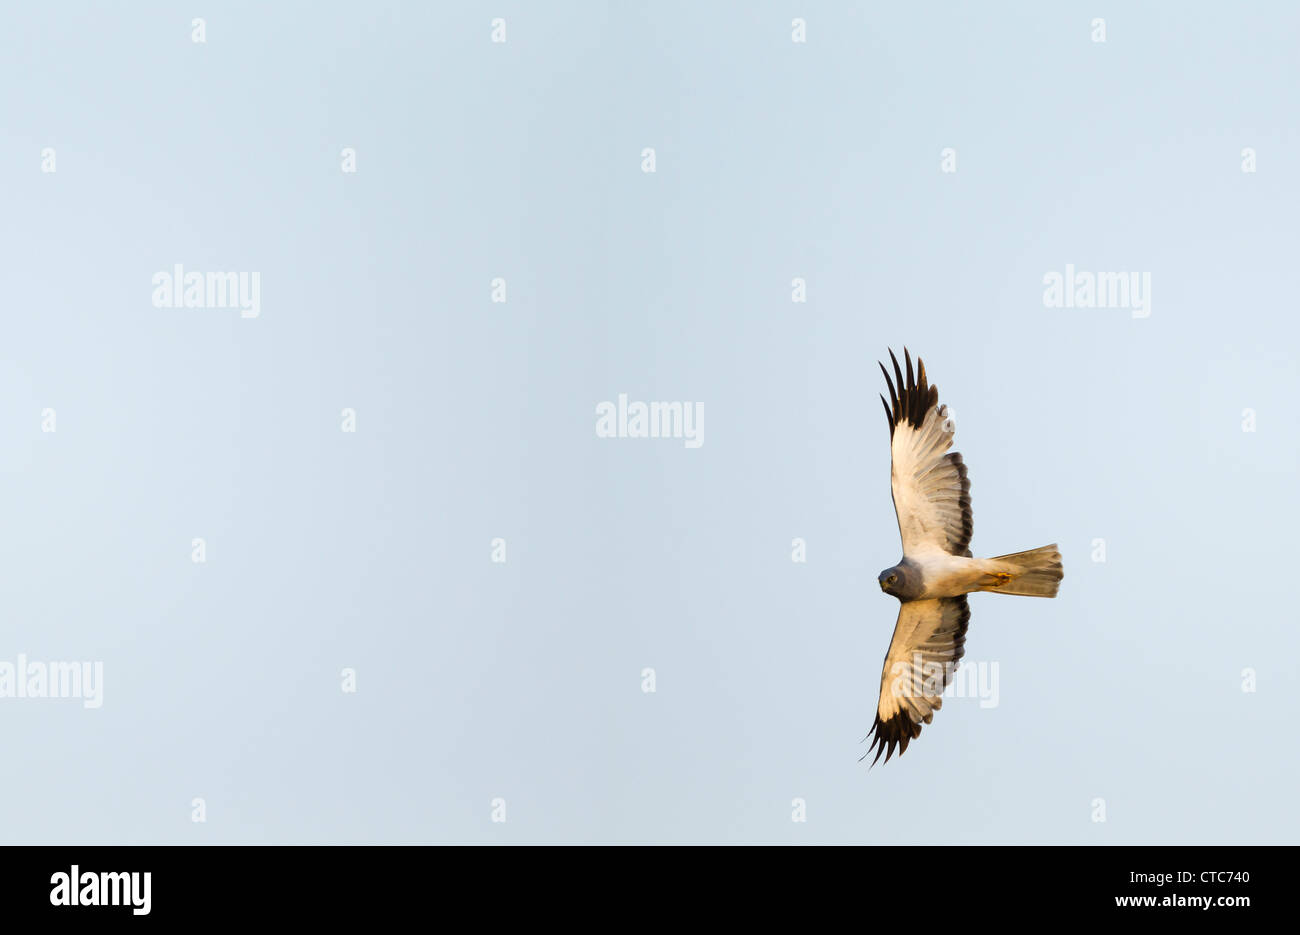 Hen harrier in flight against a clear blue sky Stock Photo